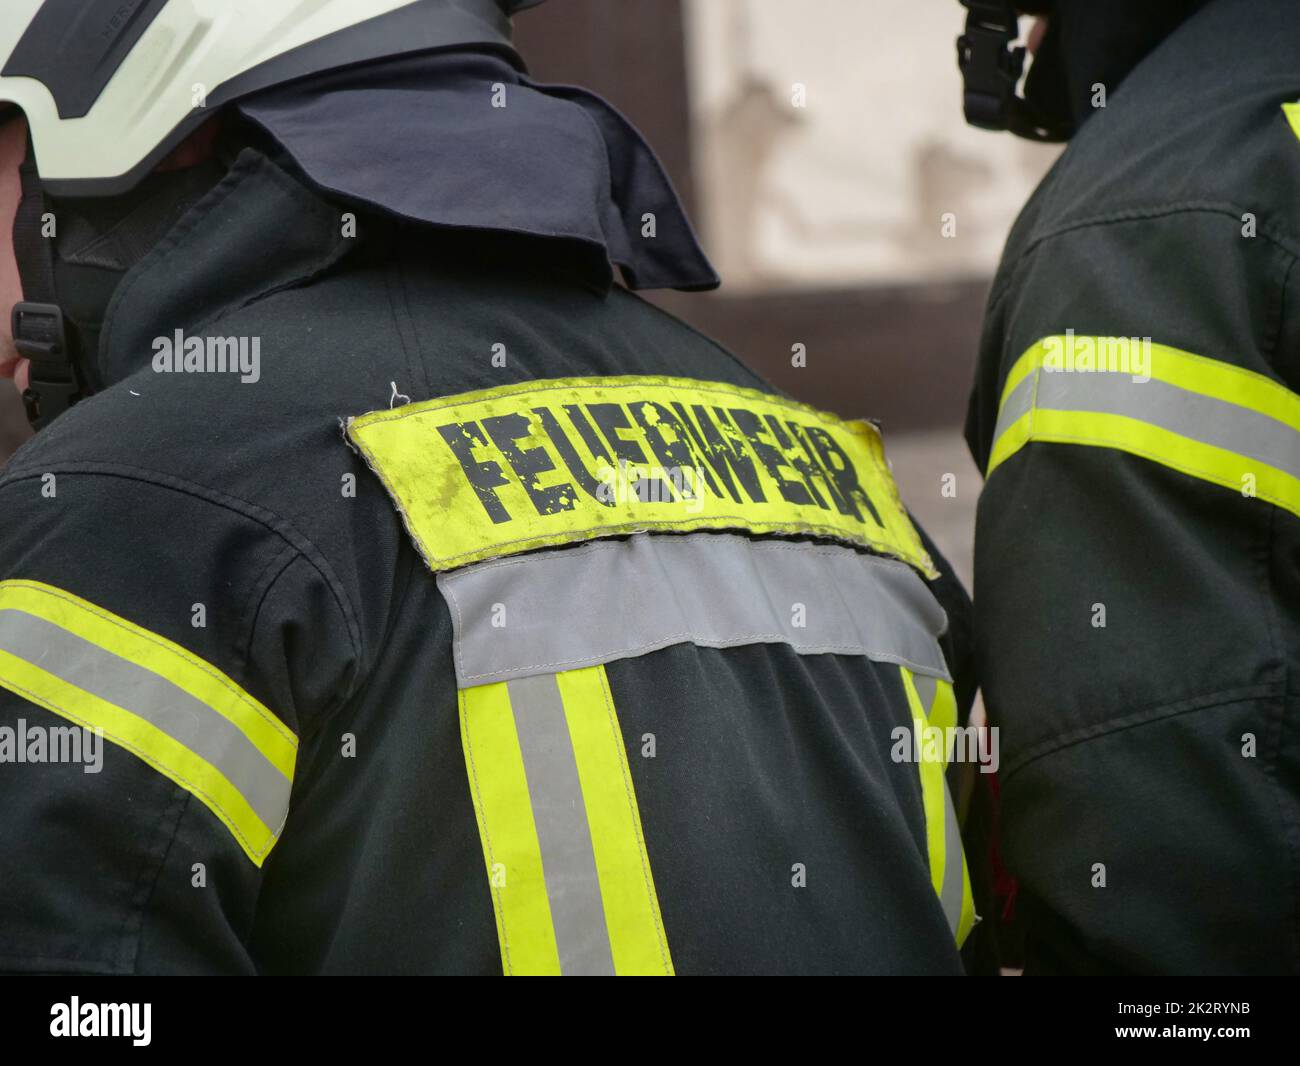 Pompiers Allemagne dans diverses actions comme une image symbolique. Banque D'Images